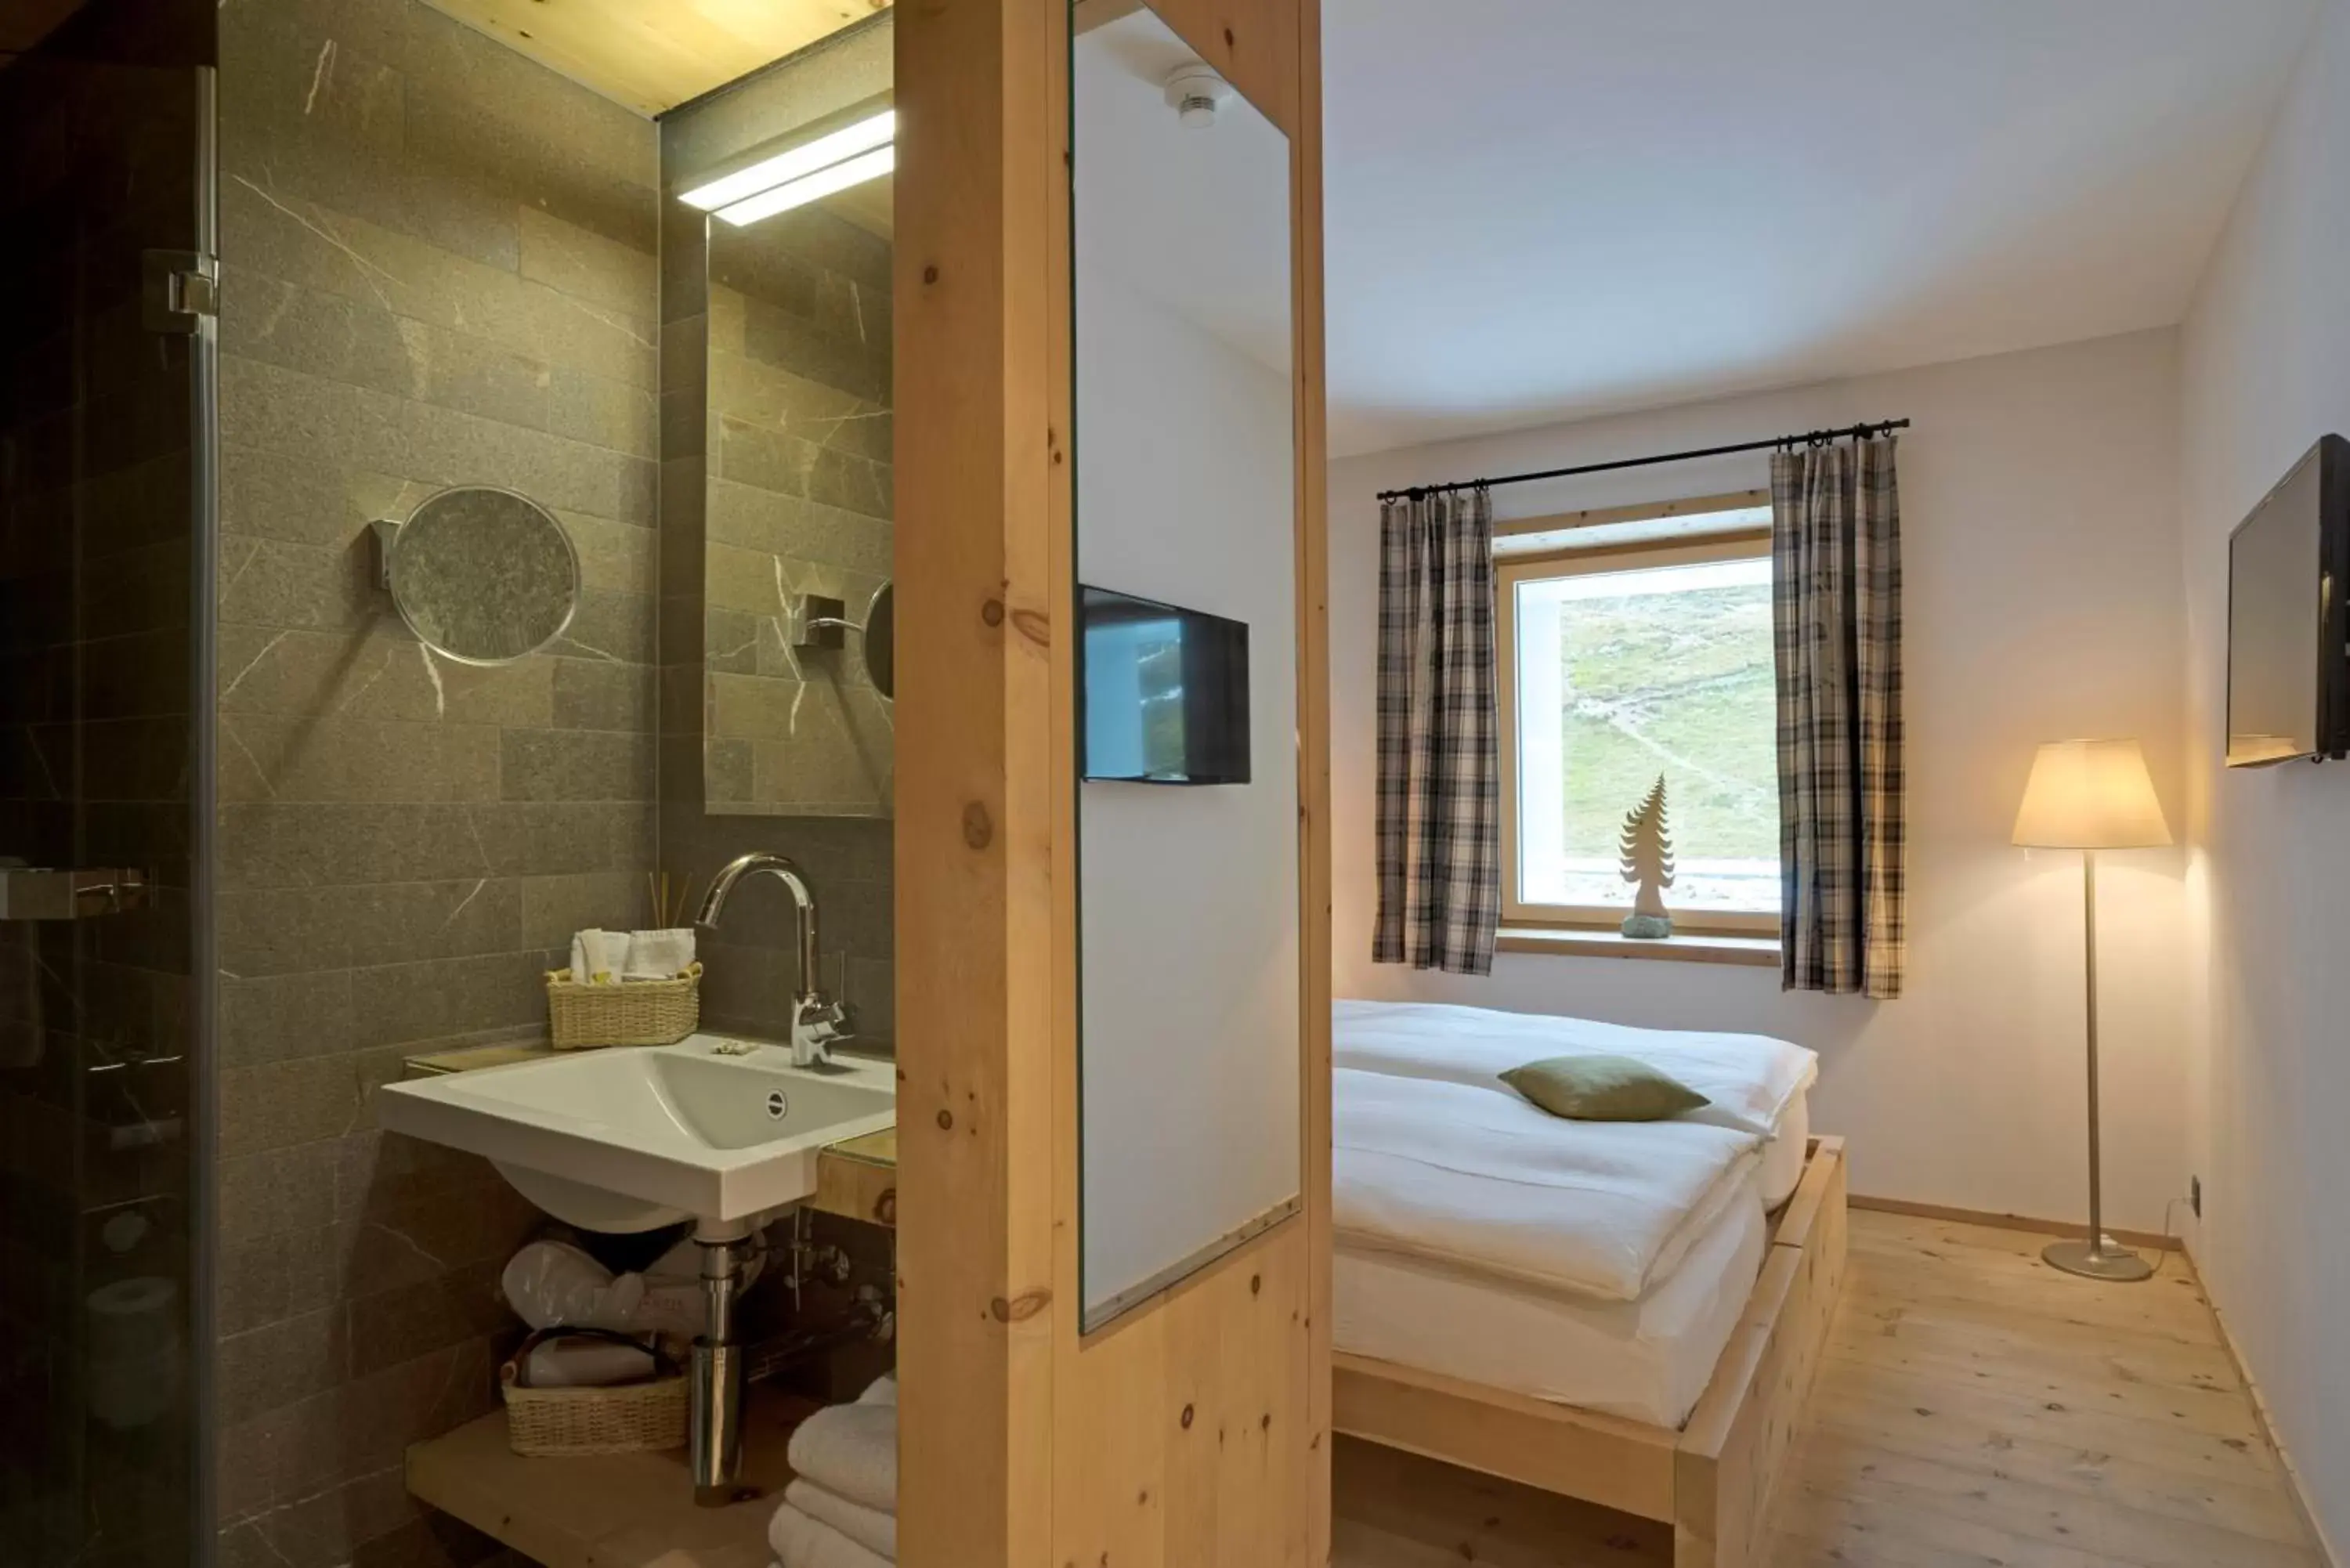 Photo of the whole room, Bathroom in Romantik Hotel Muottas Muragl